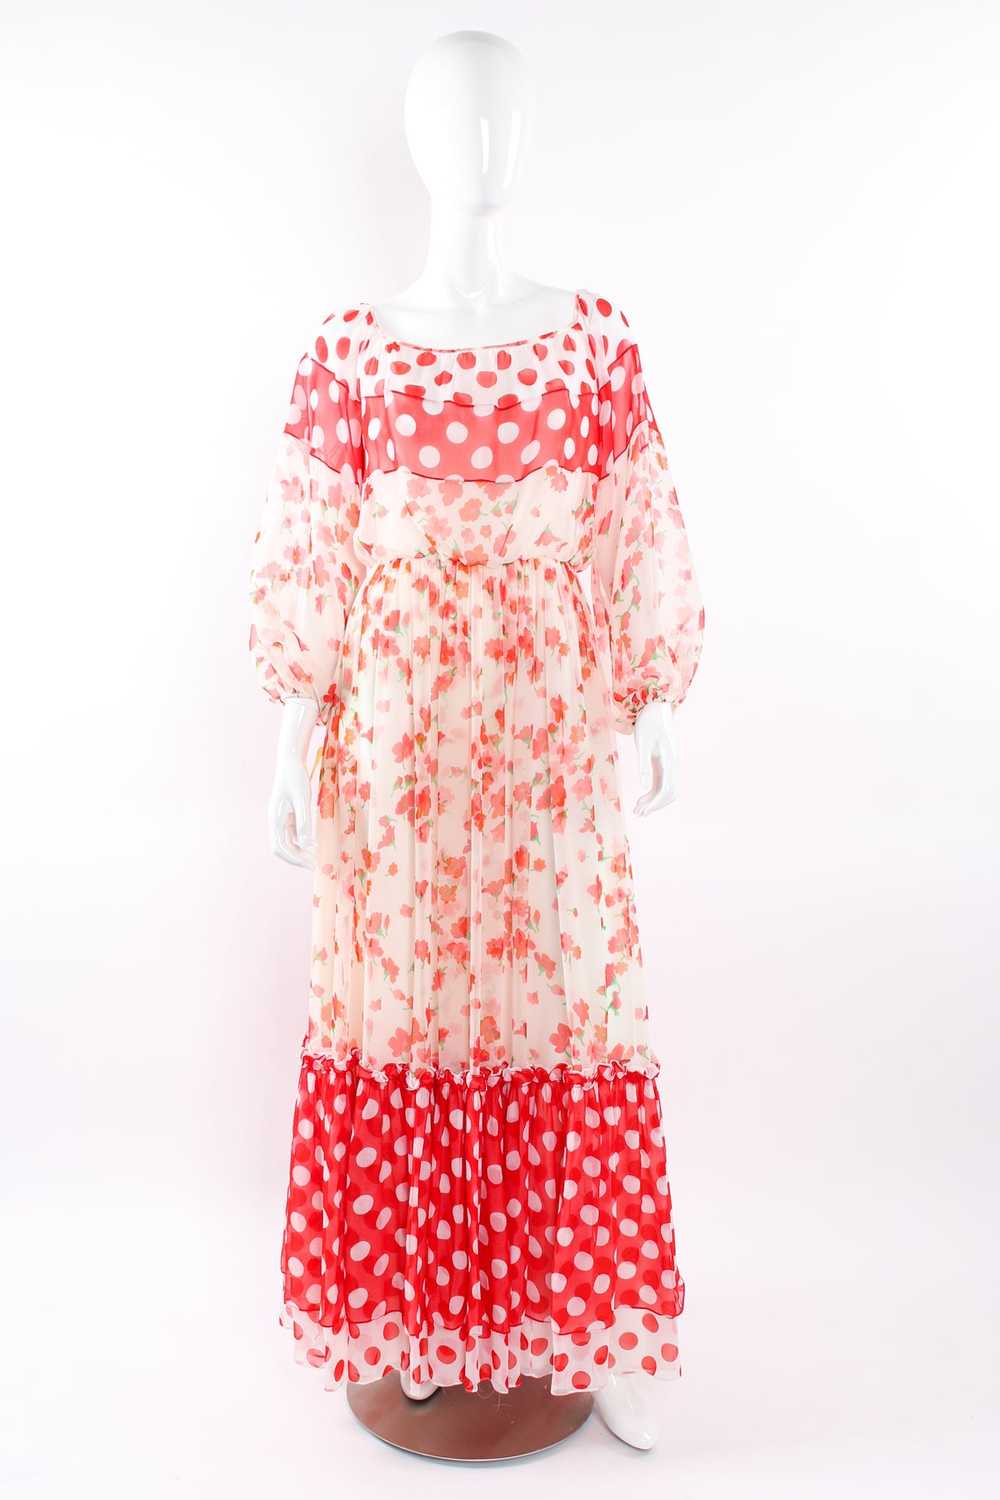 MIGNON Blooming Polka Dot Dress - image 3